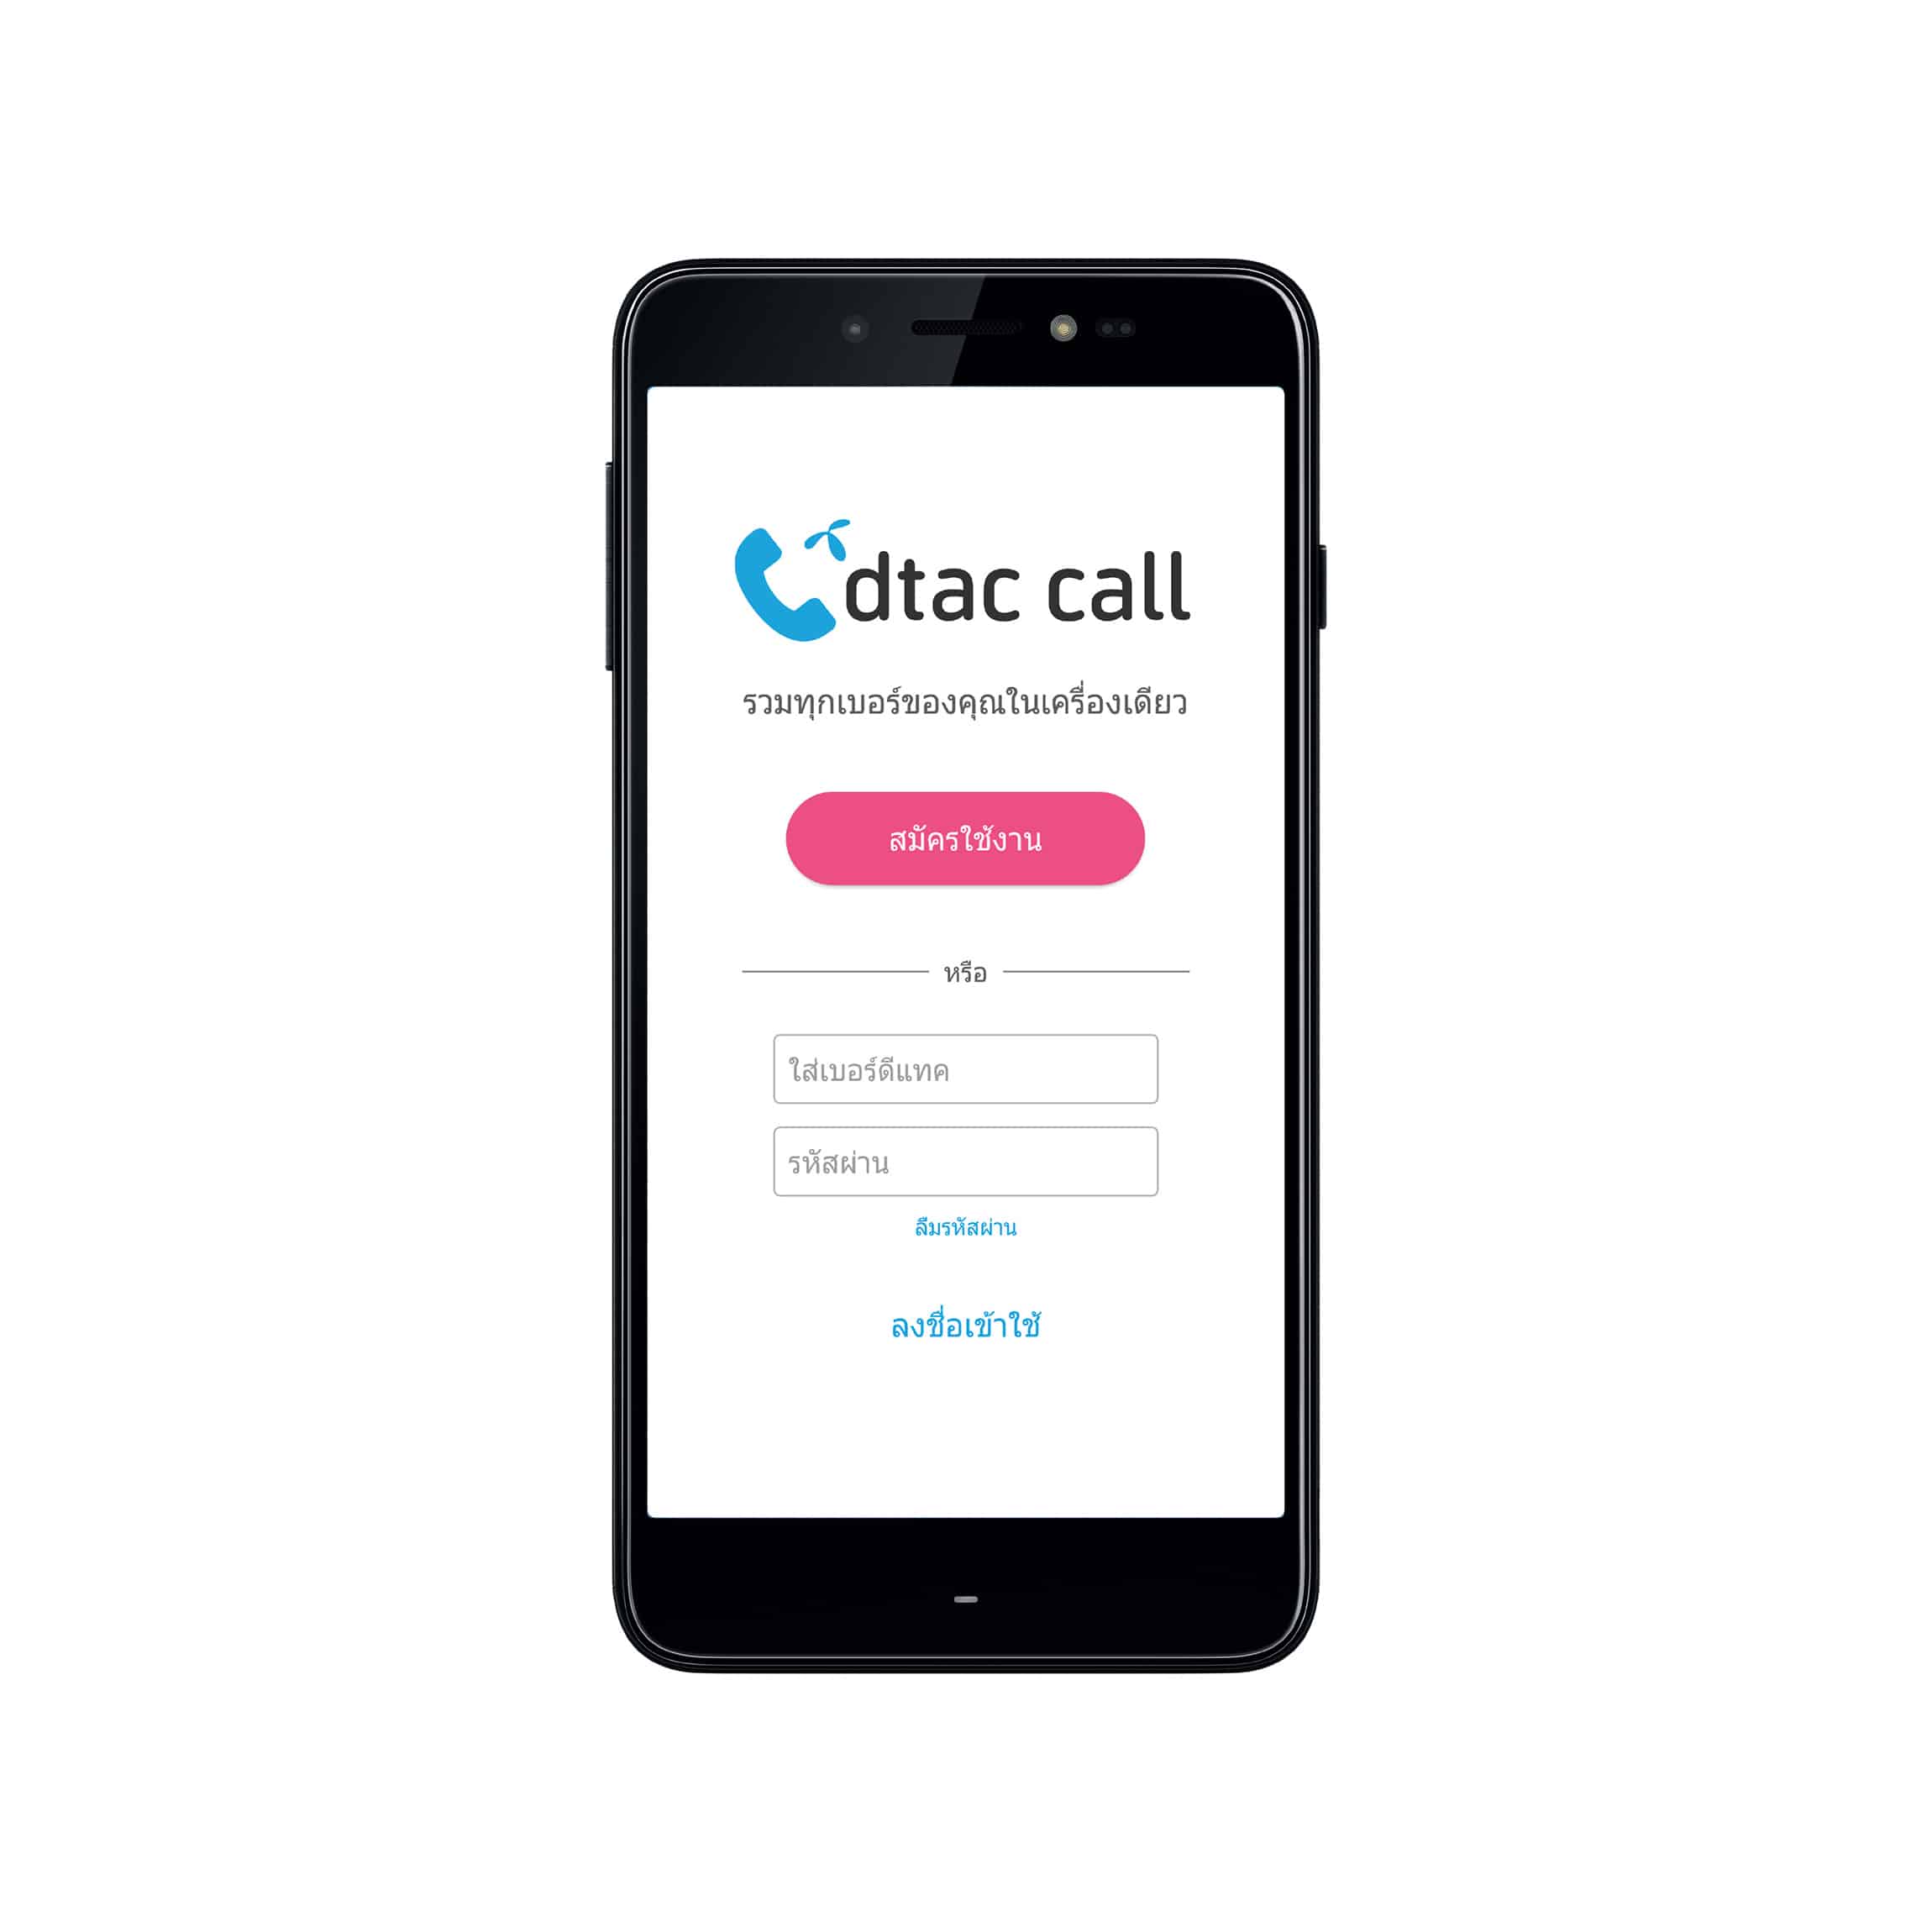 dtac call - dtac call Screen shot Register TH - ภาพที่ 1